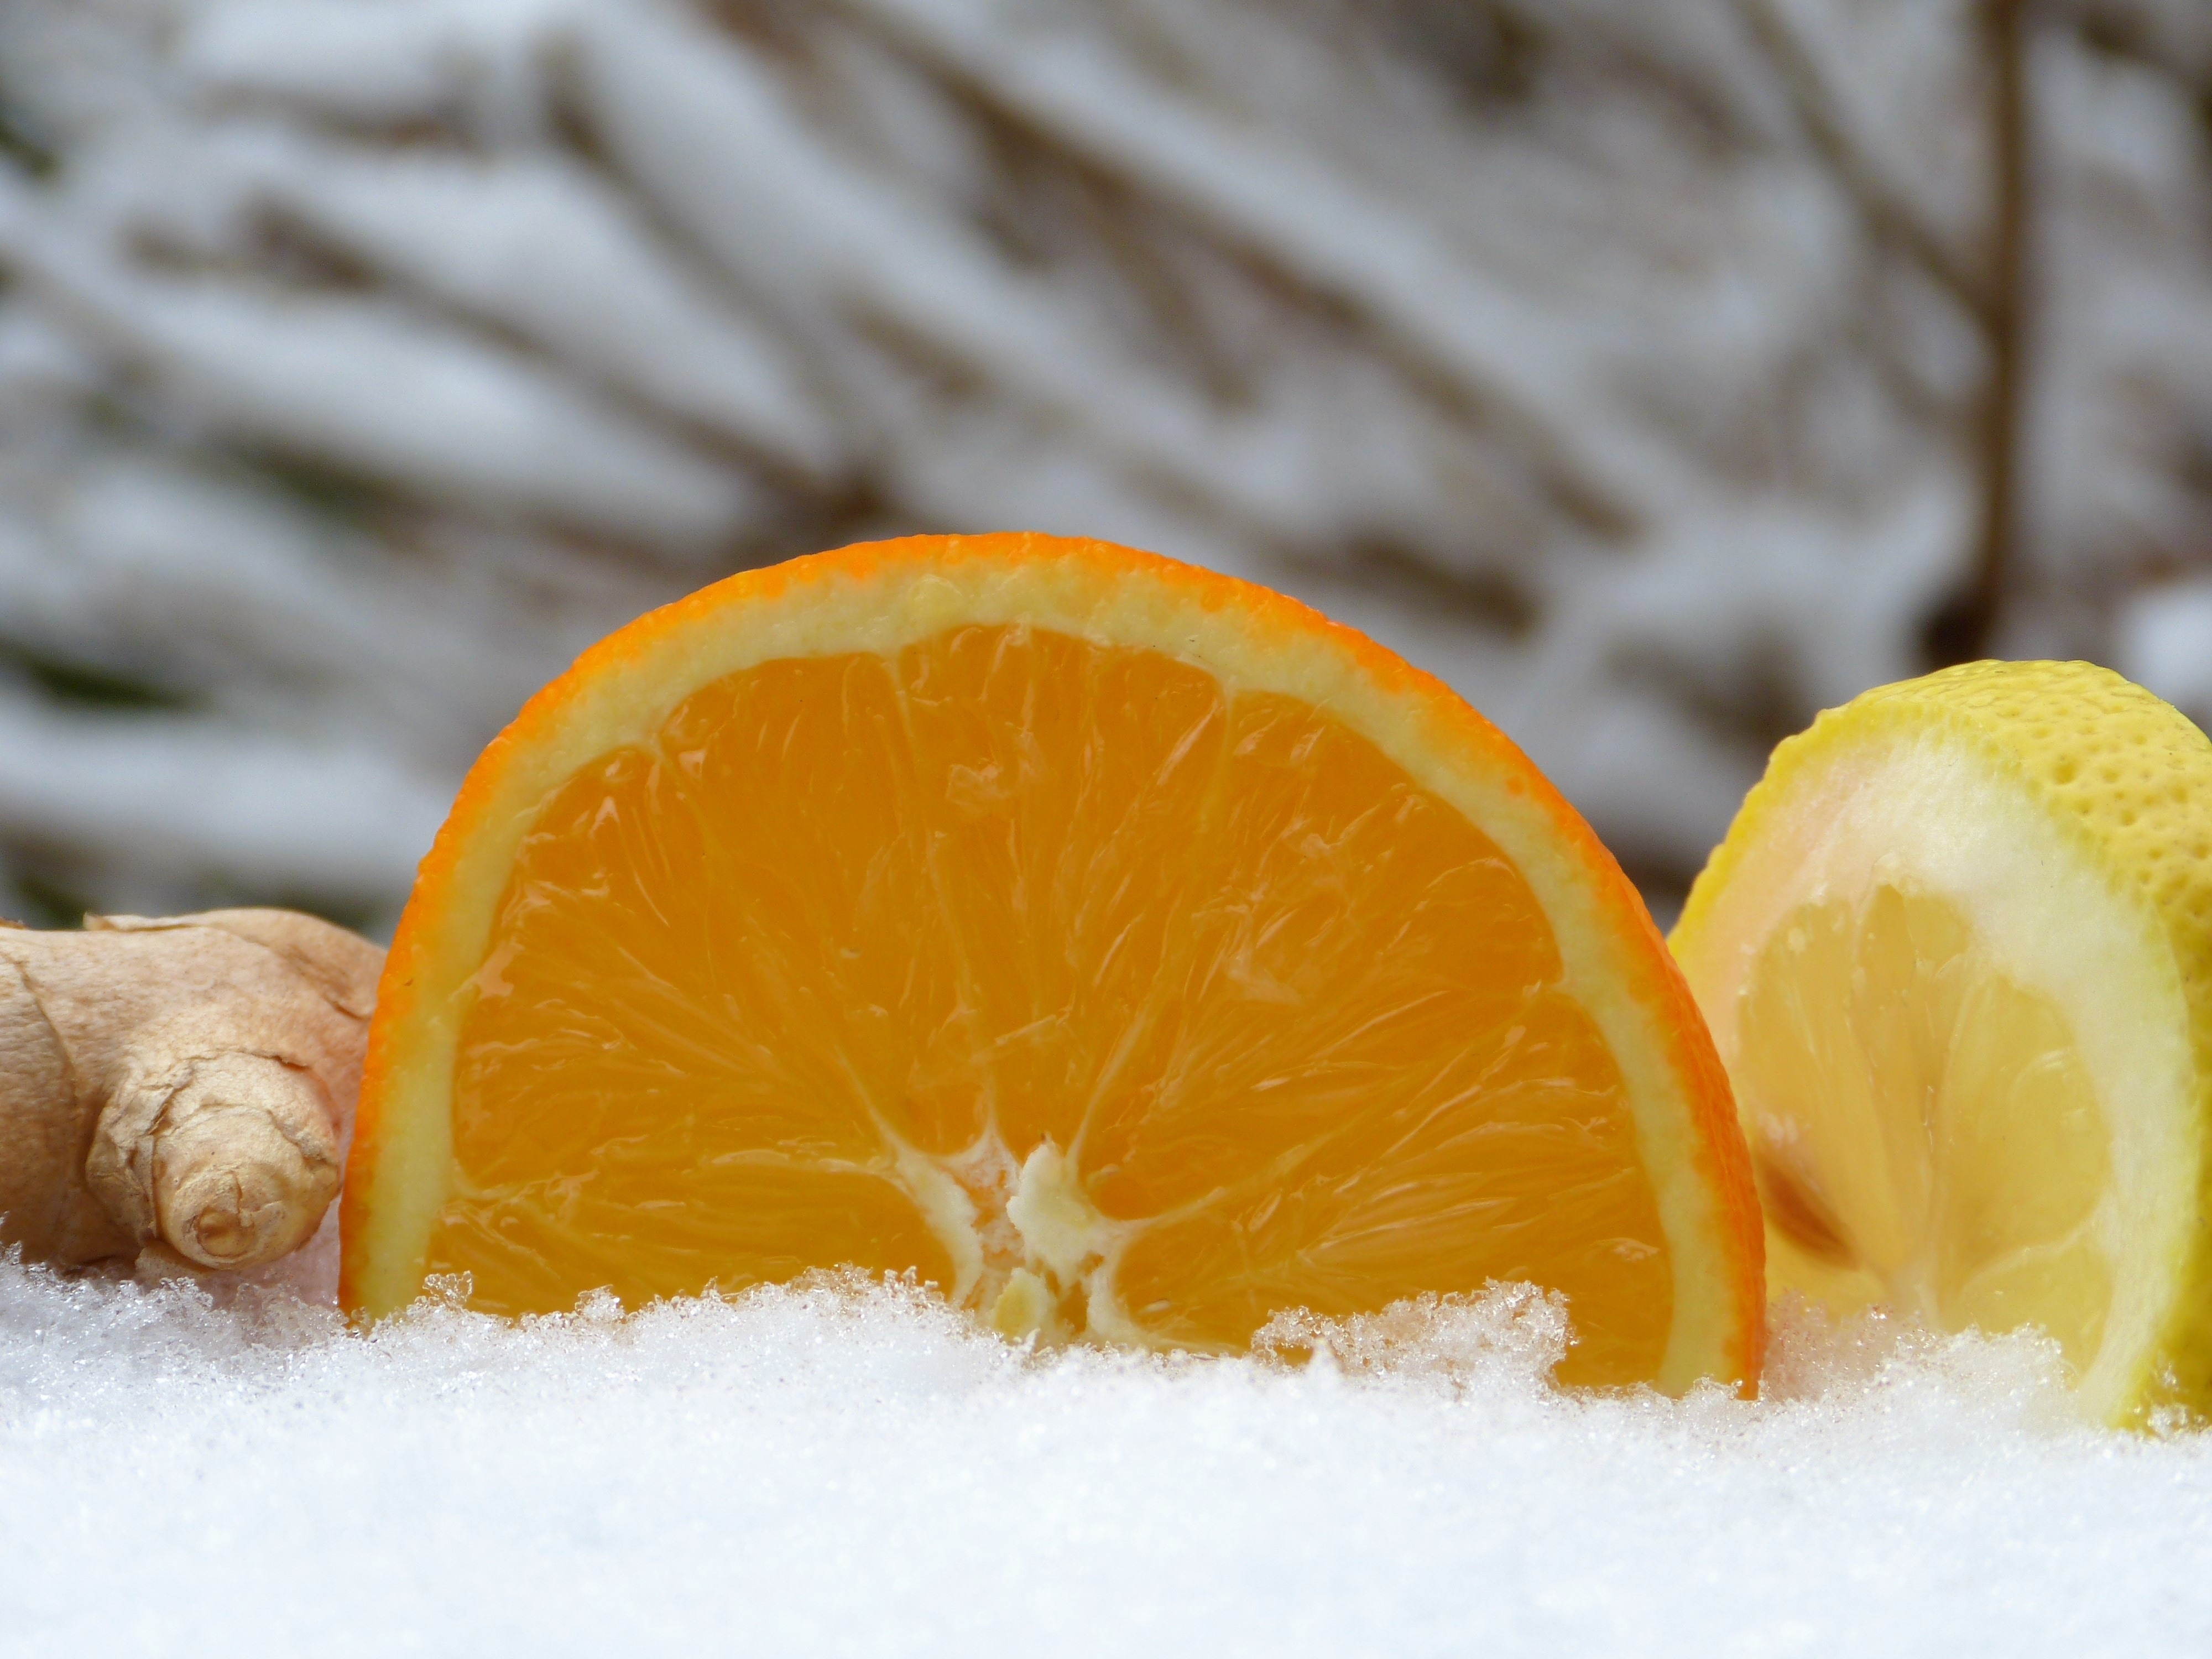 sliced orange fruit, lemon and ginger